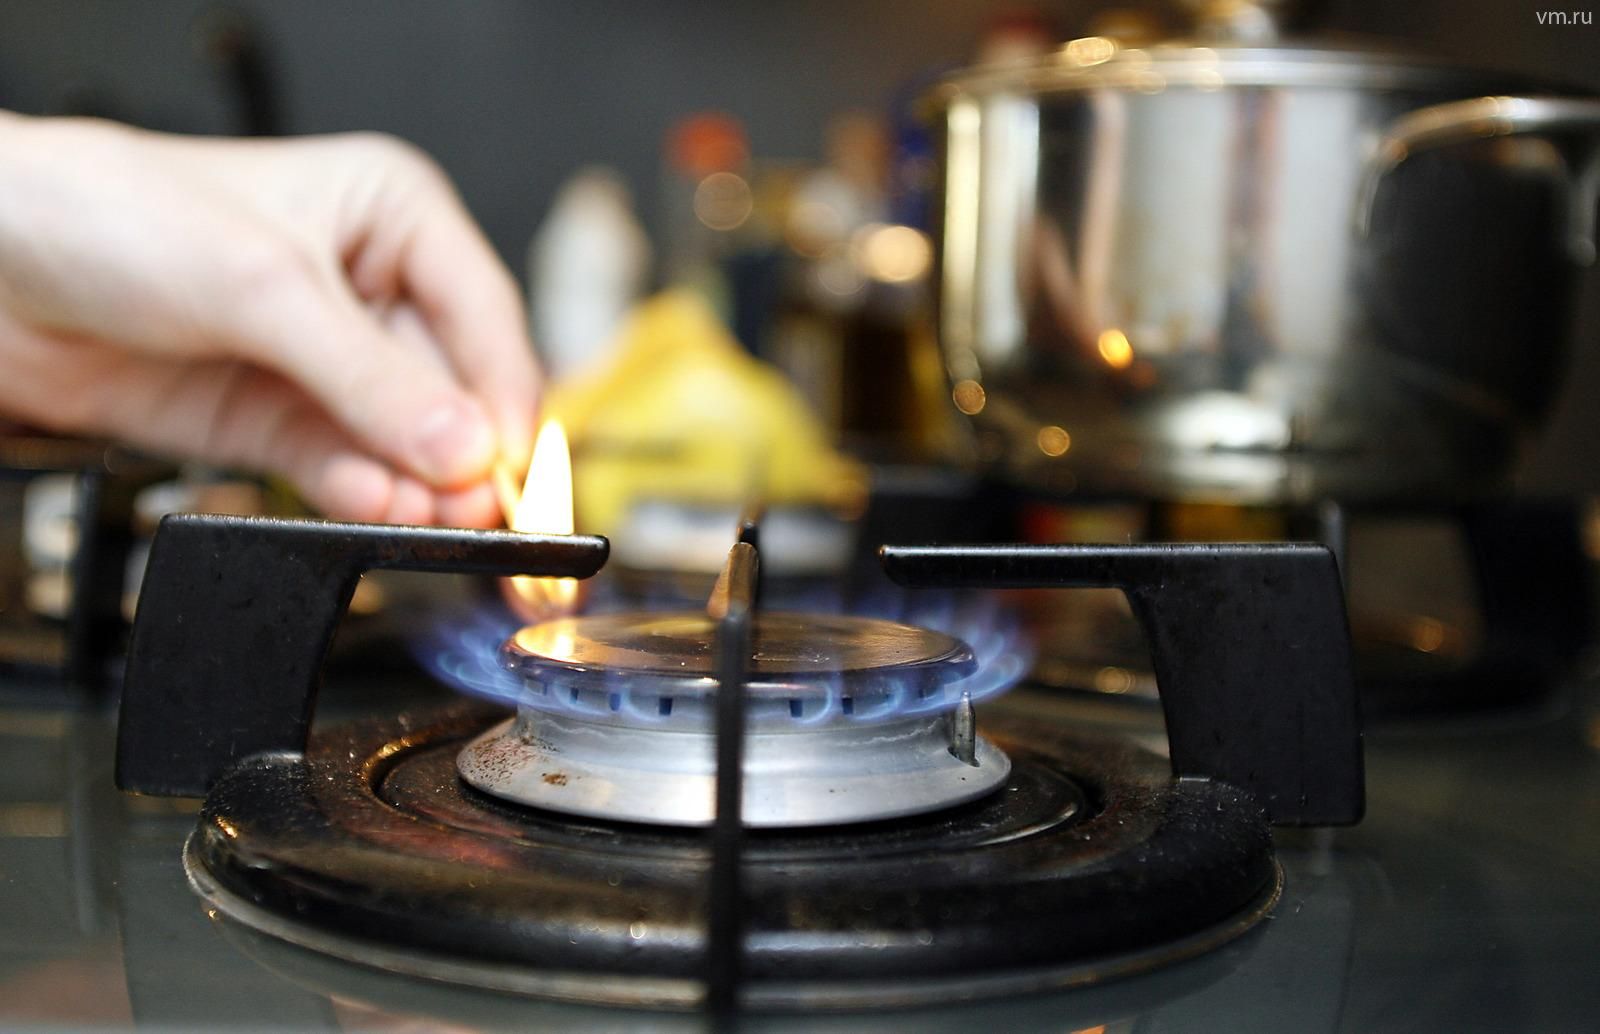  Цены на газ в Украине снизятся прогноз главы "Нафтогаза"